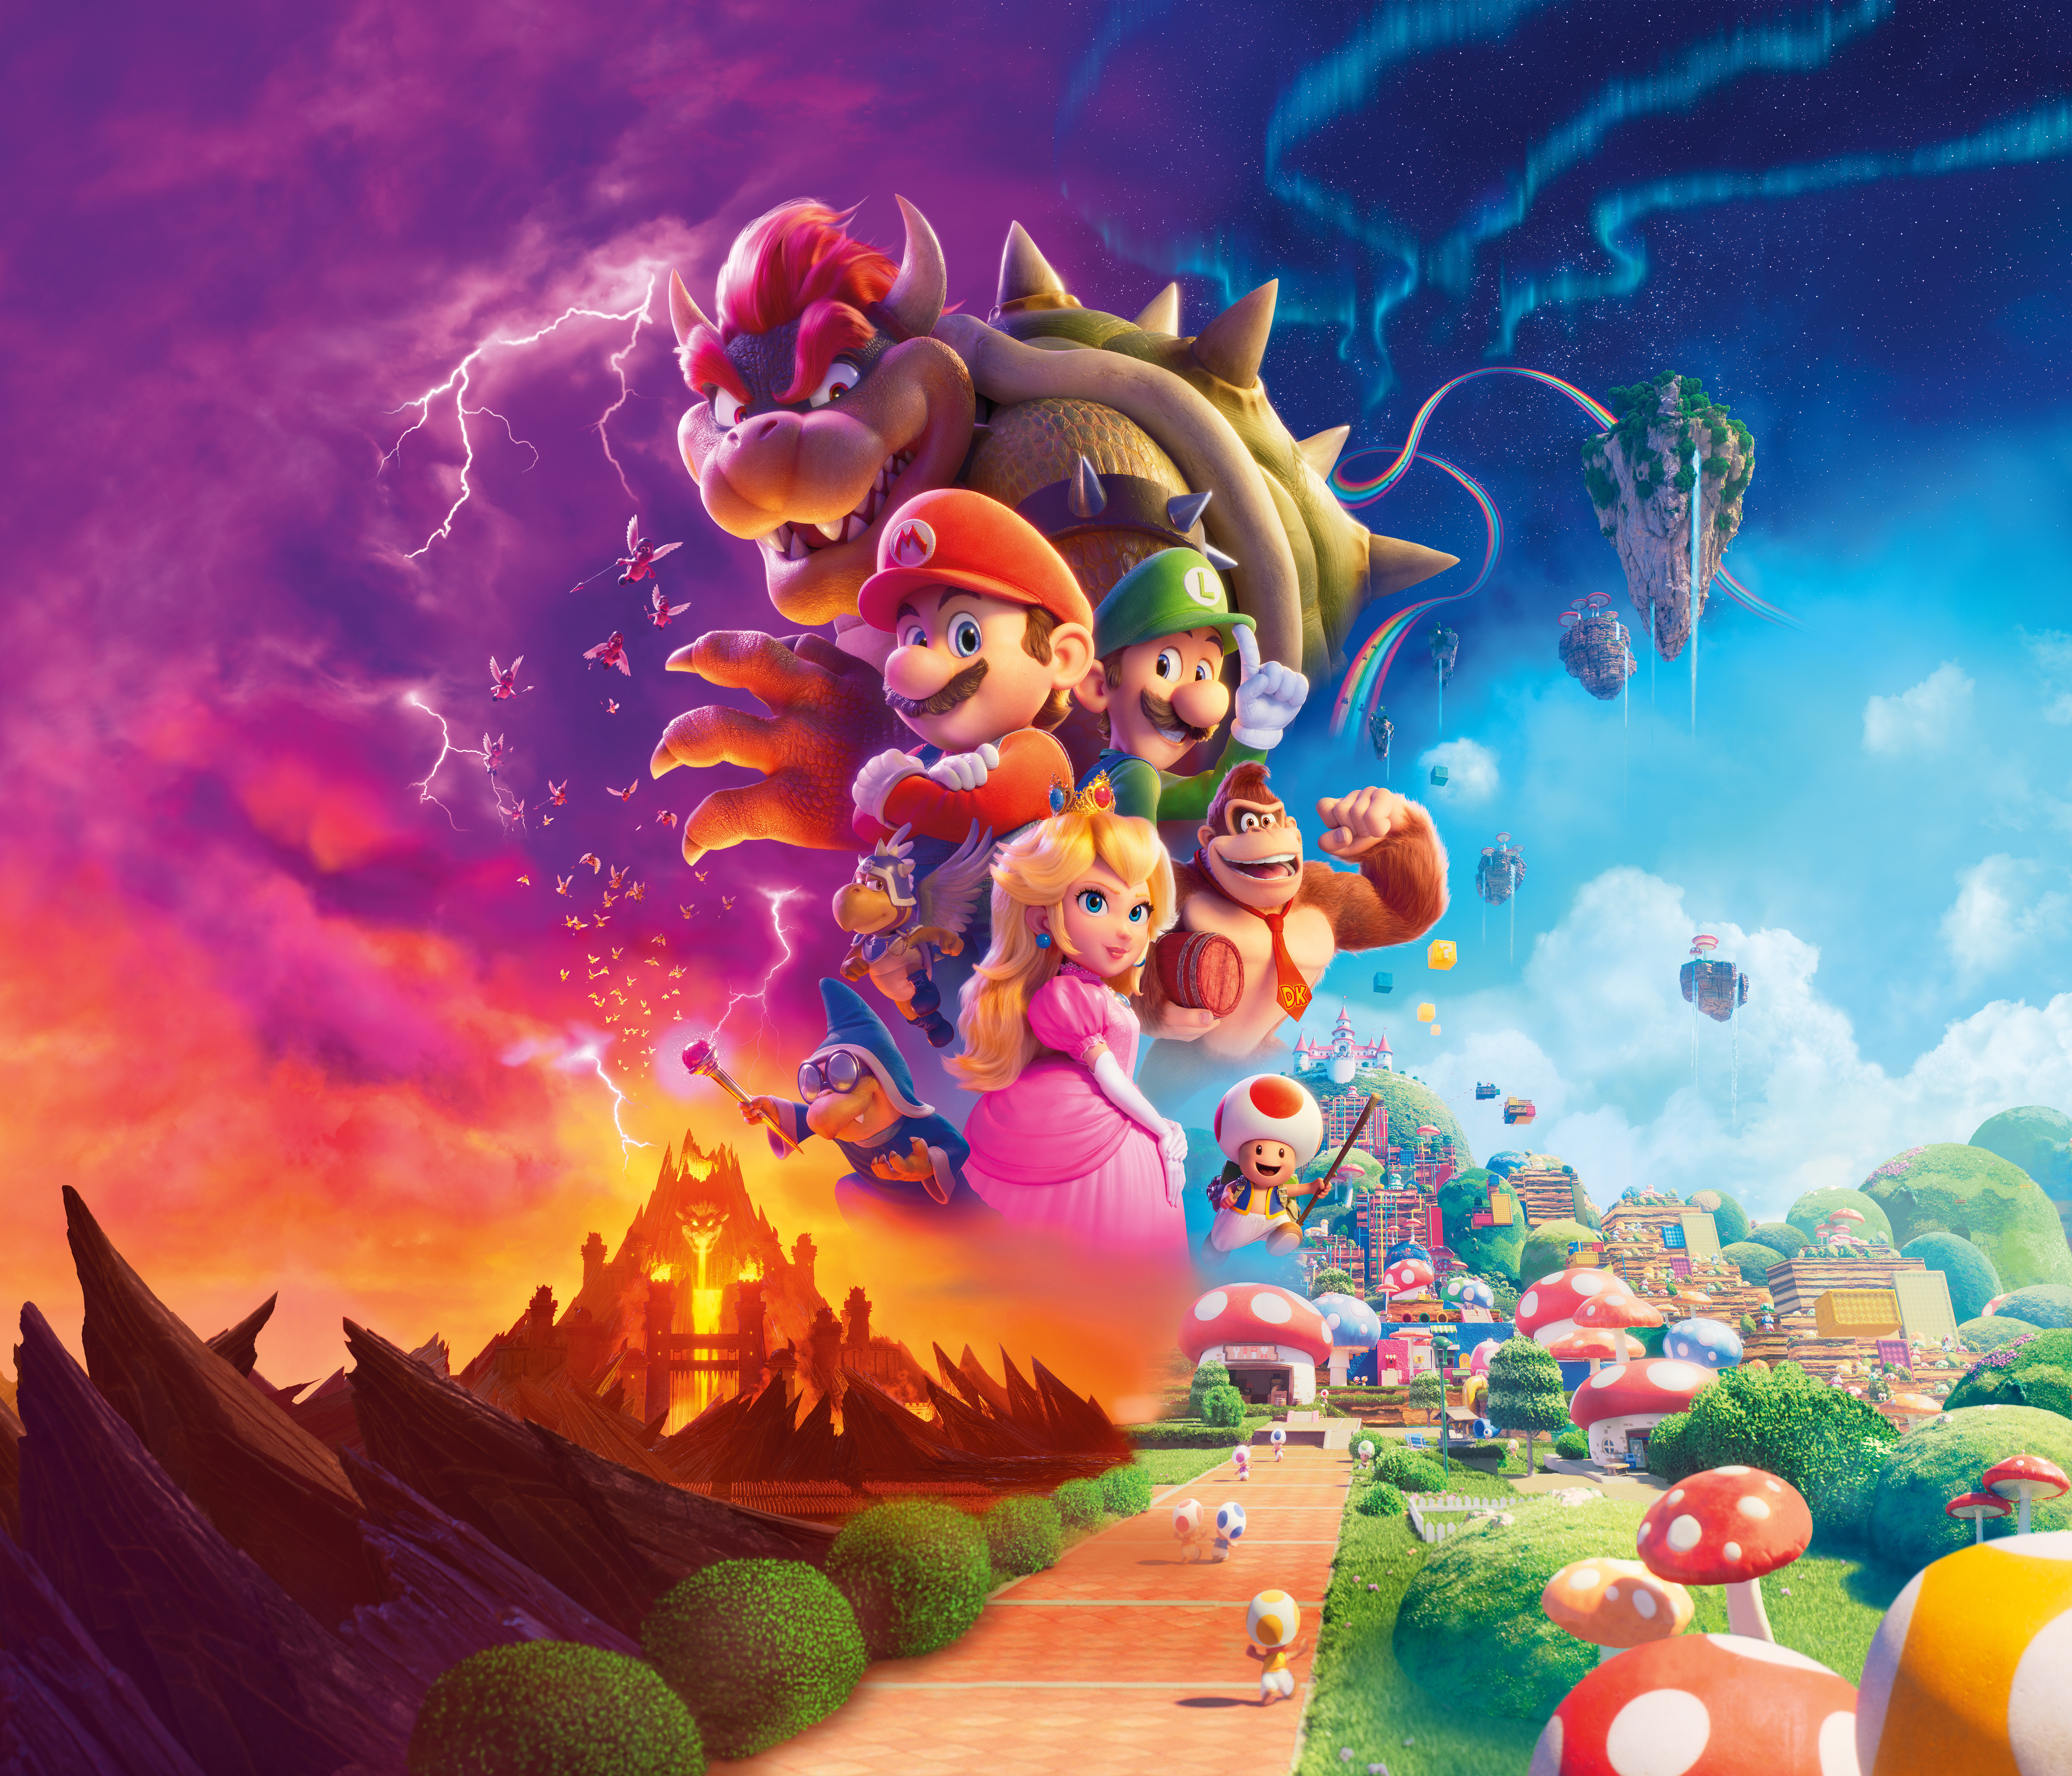 Tung tạo hình của 6 nhân vật xuất hiện trong phim Anh Em Super Mario